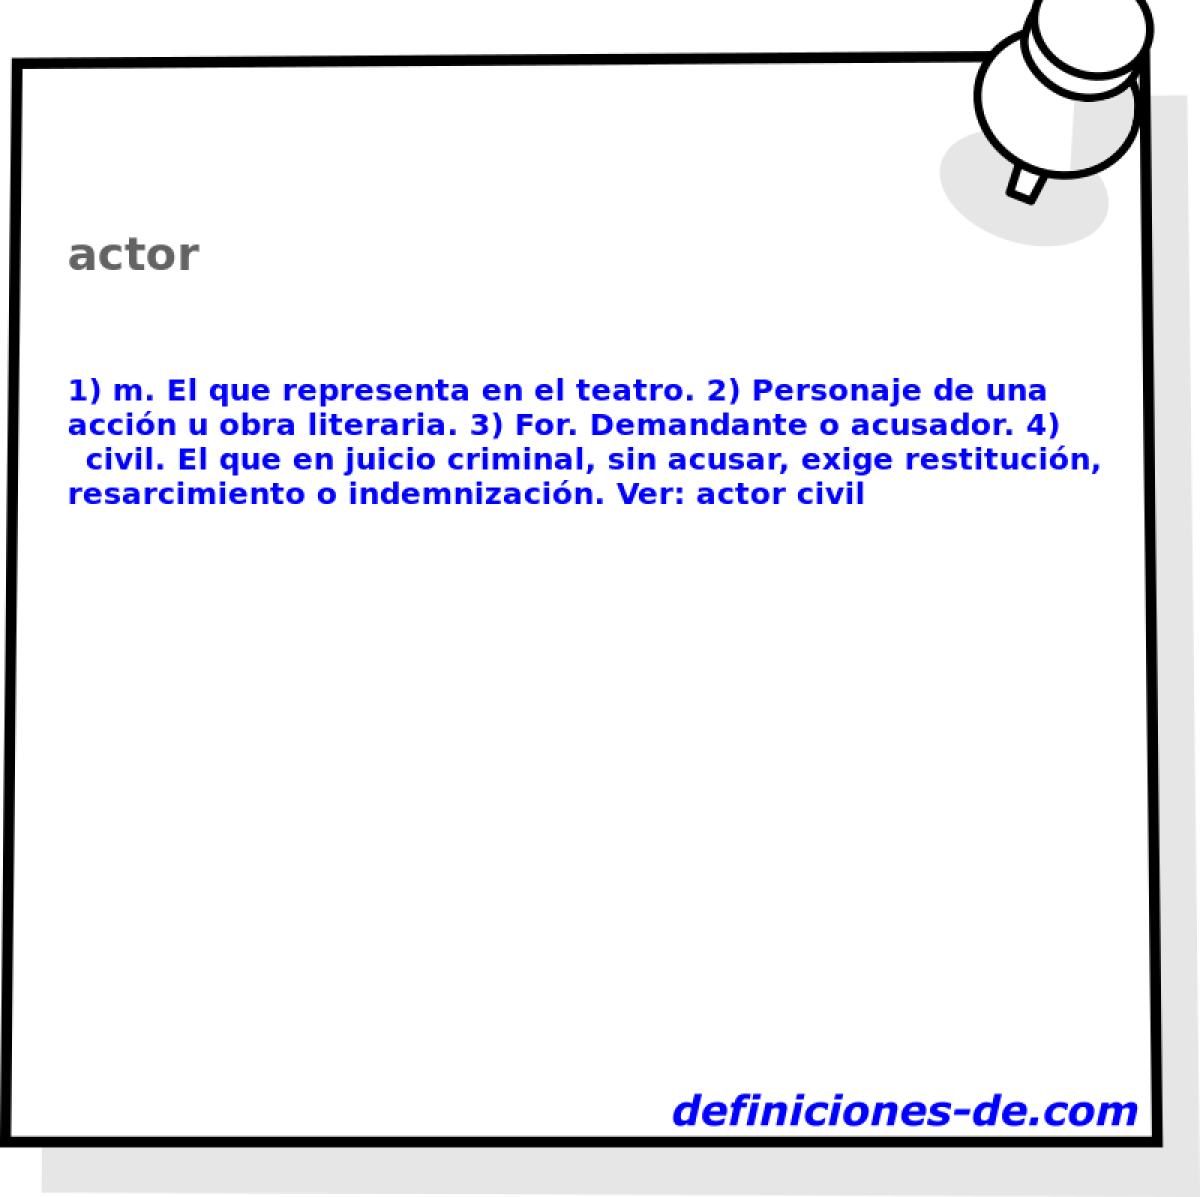 actor 